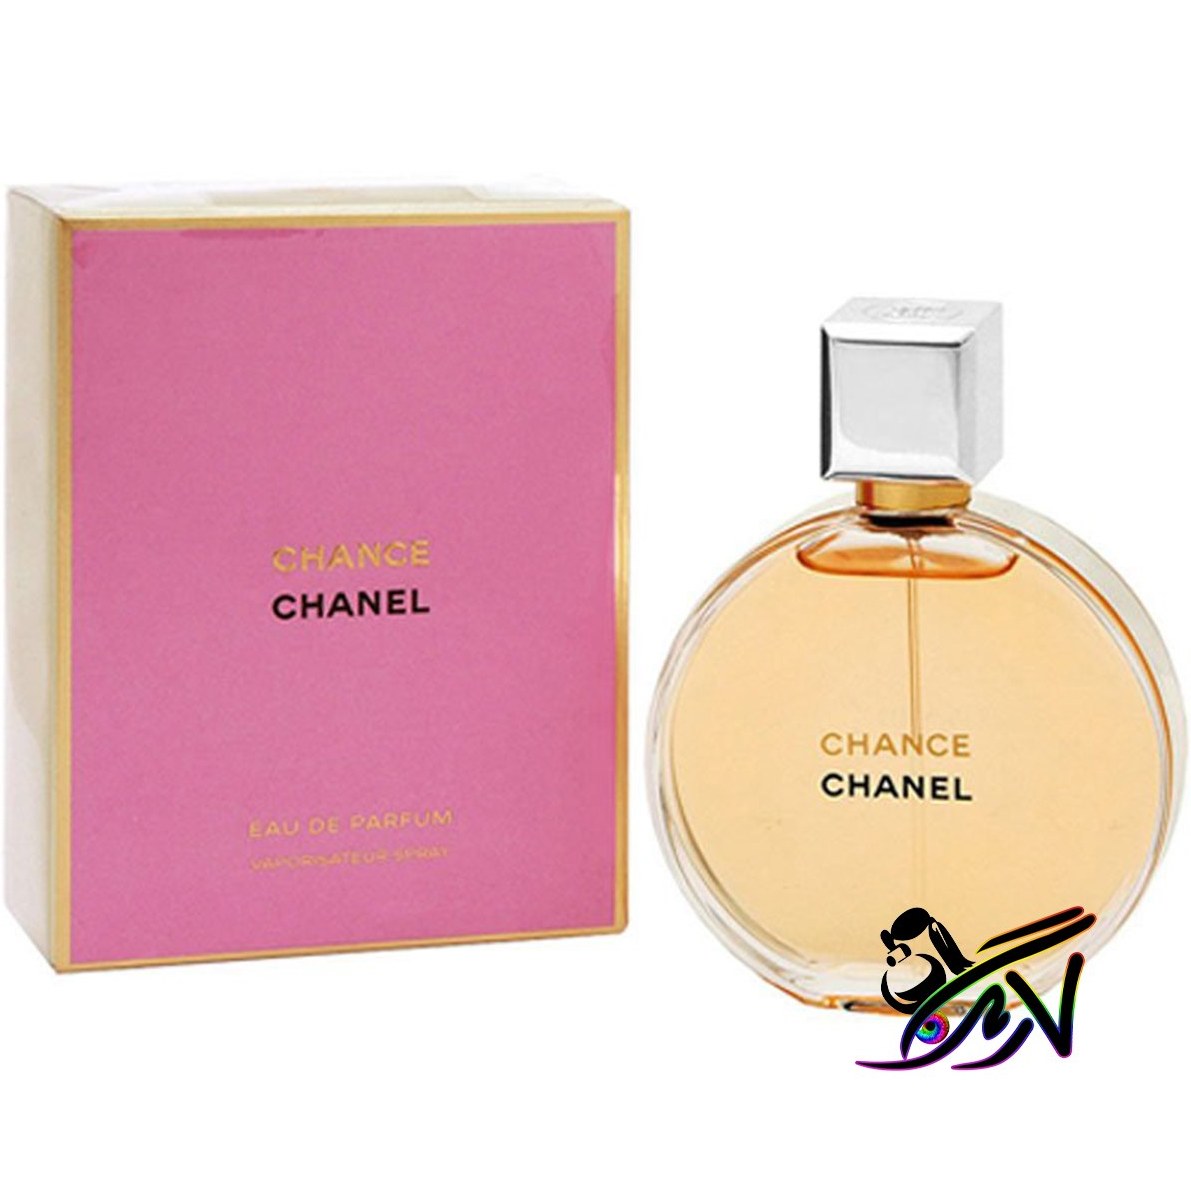 خرید و قیمت CHANEL Chanel No 5 Parfum Baccarat Grand Extrait ا شنل نامبر 5  پارفوم باکارات گرند اکستریت